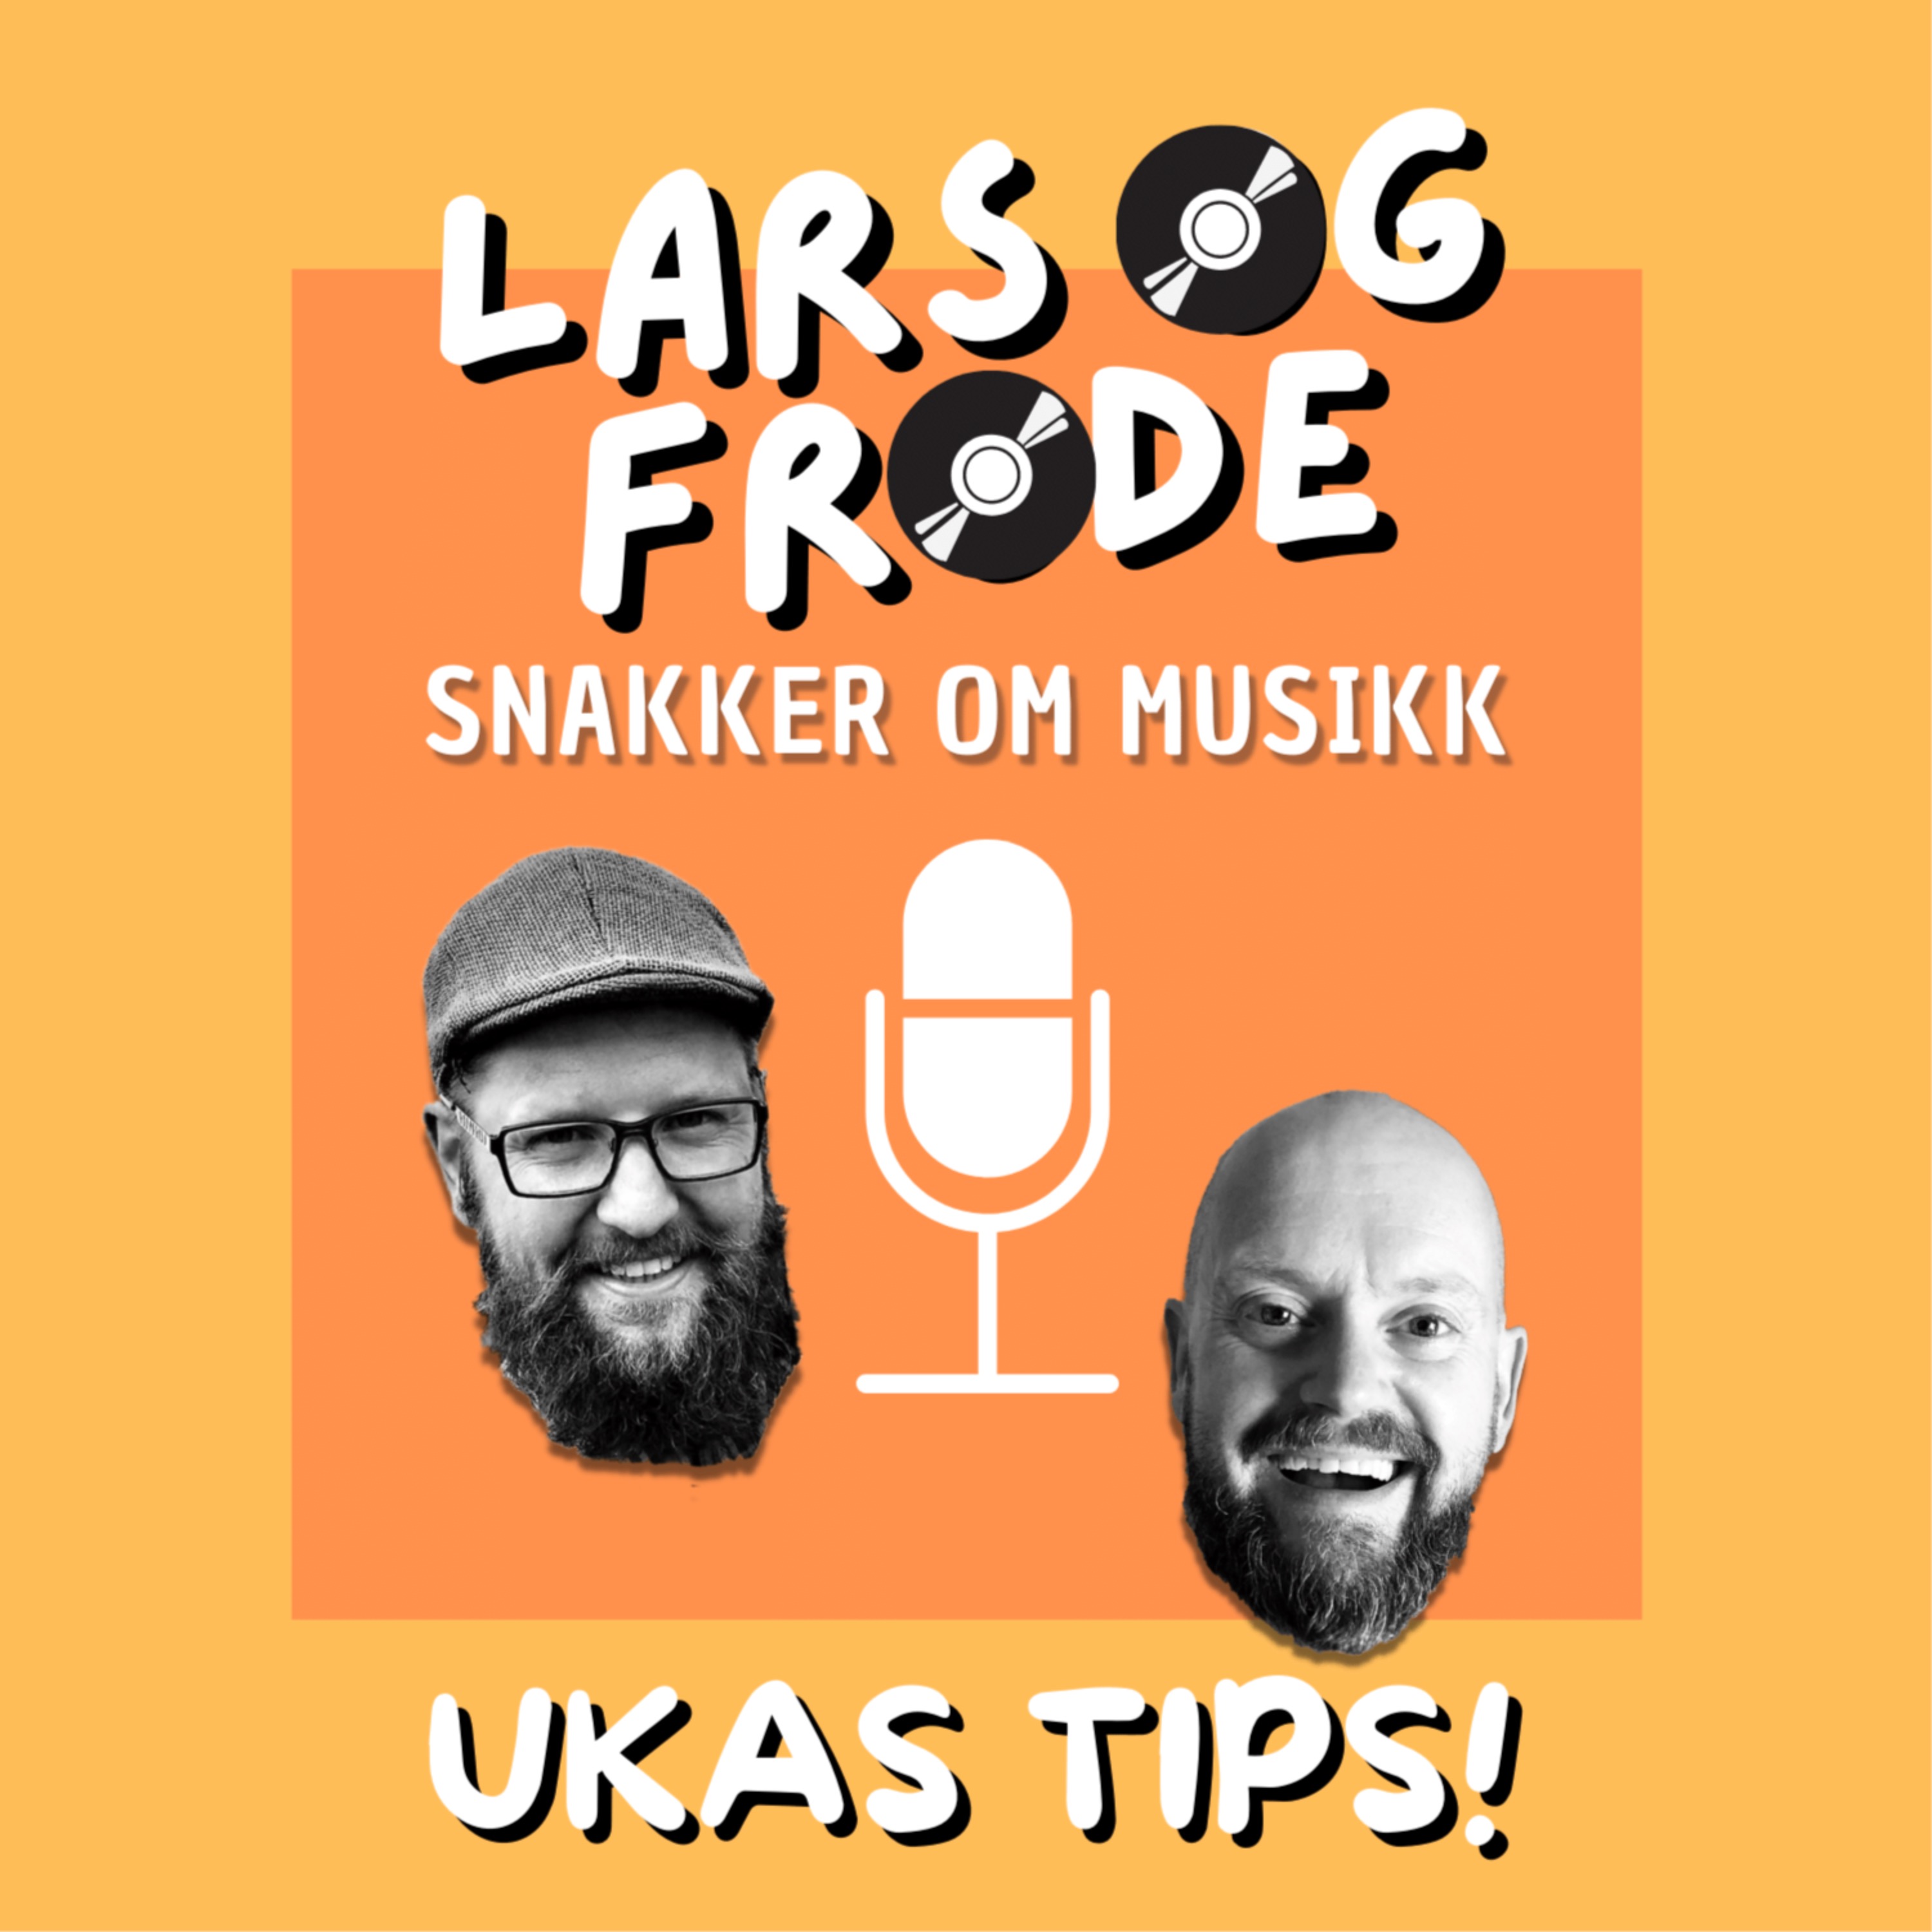 Ukas tips: Mørk og rocka svenskpop